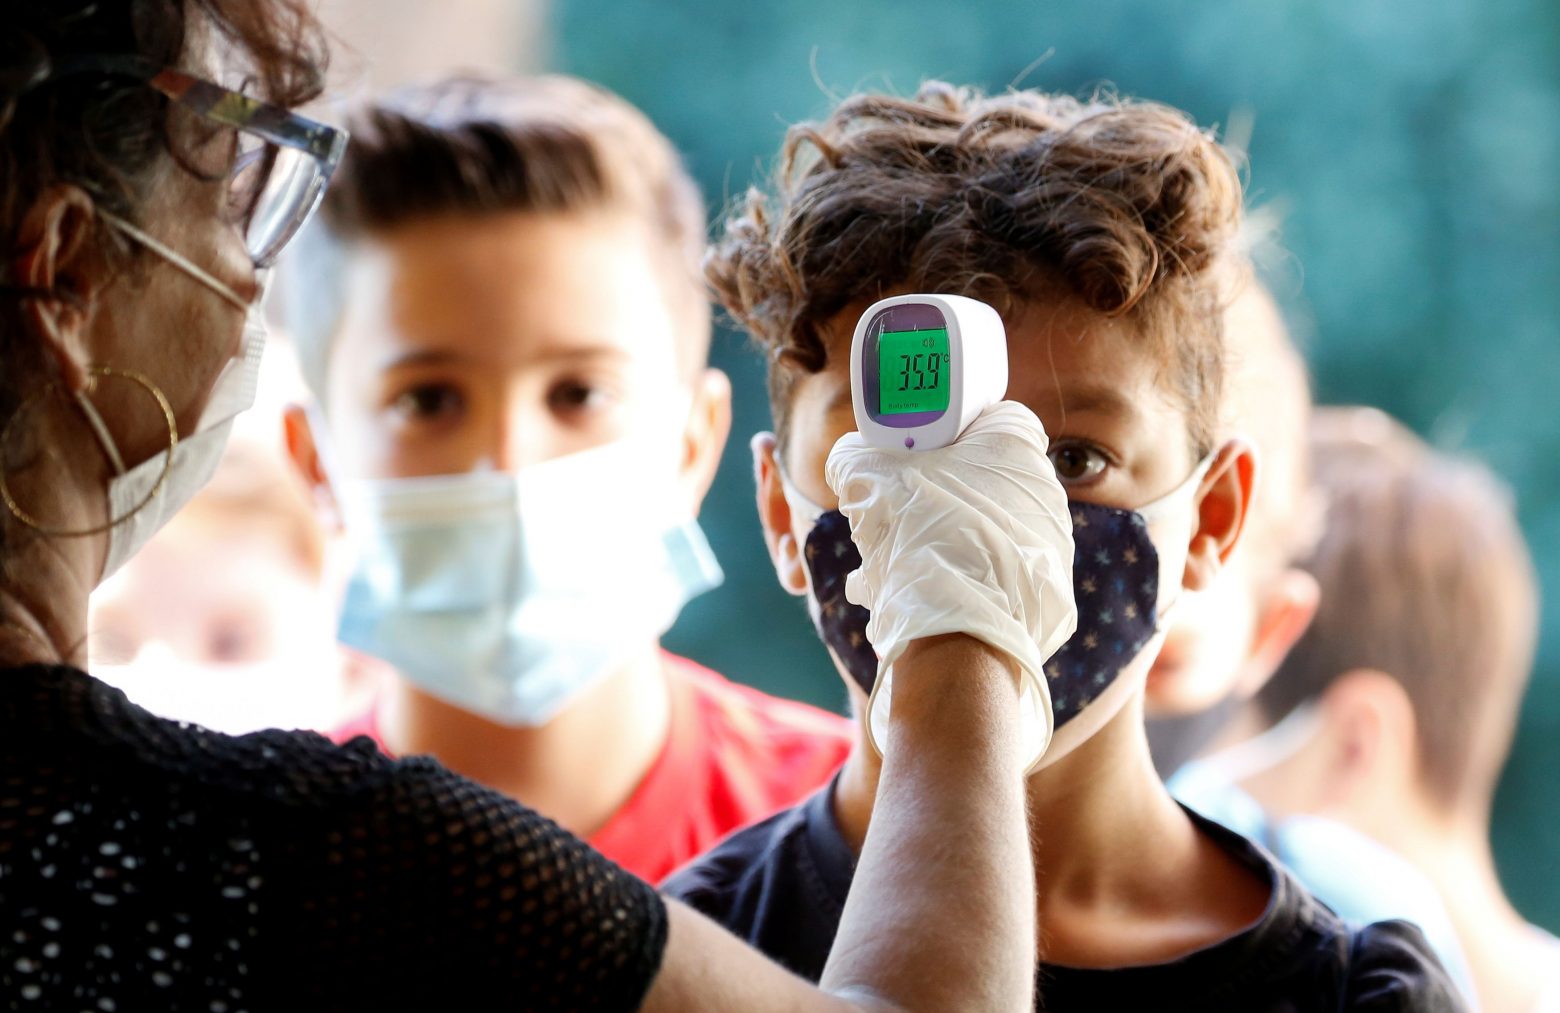 Κοροναϊός: Πηγή νέων μεταλλάξεων οι συνεχείς μολύνσεις των παιδιών - Γιατί αποφασίστηκε ο εμβολιασμός των 12-15